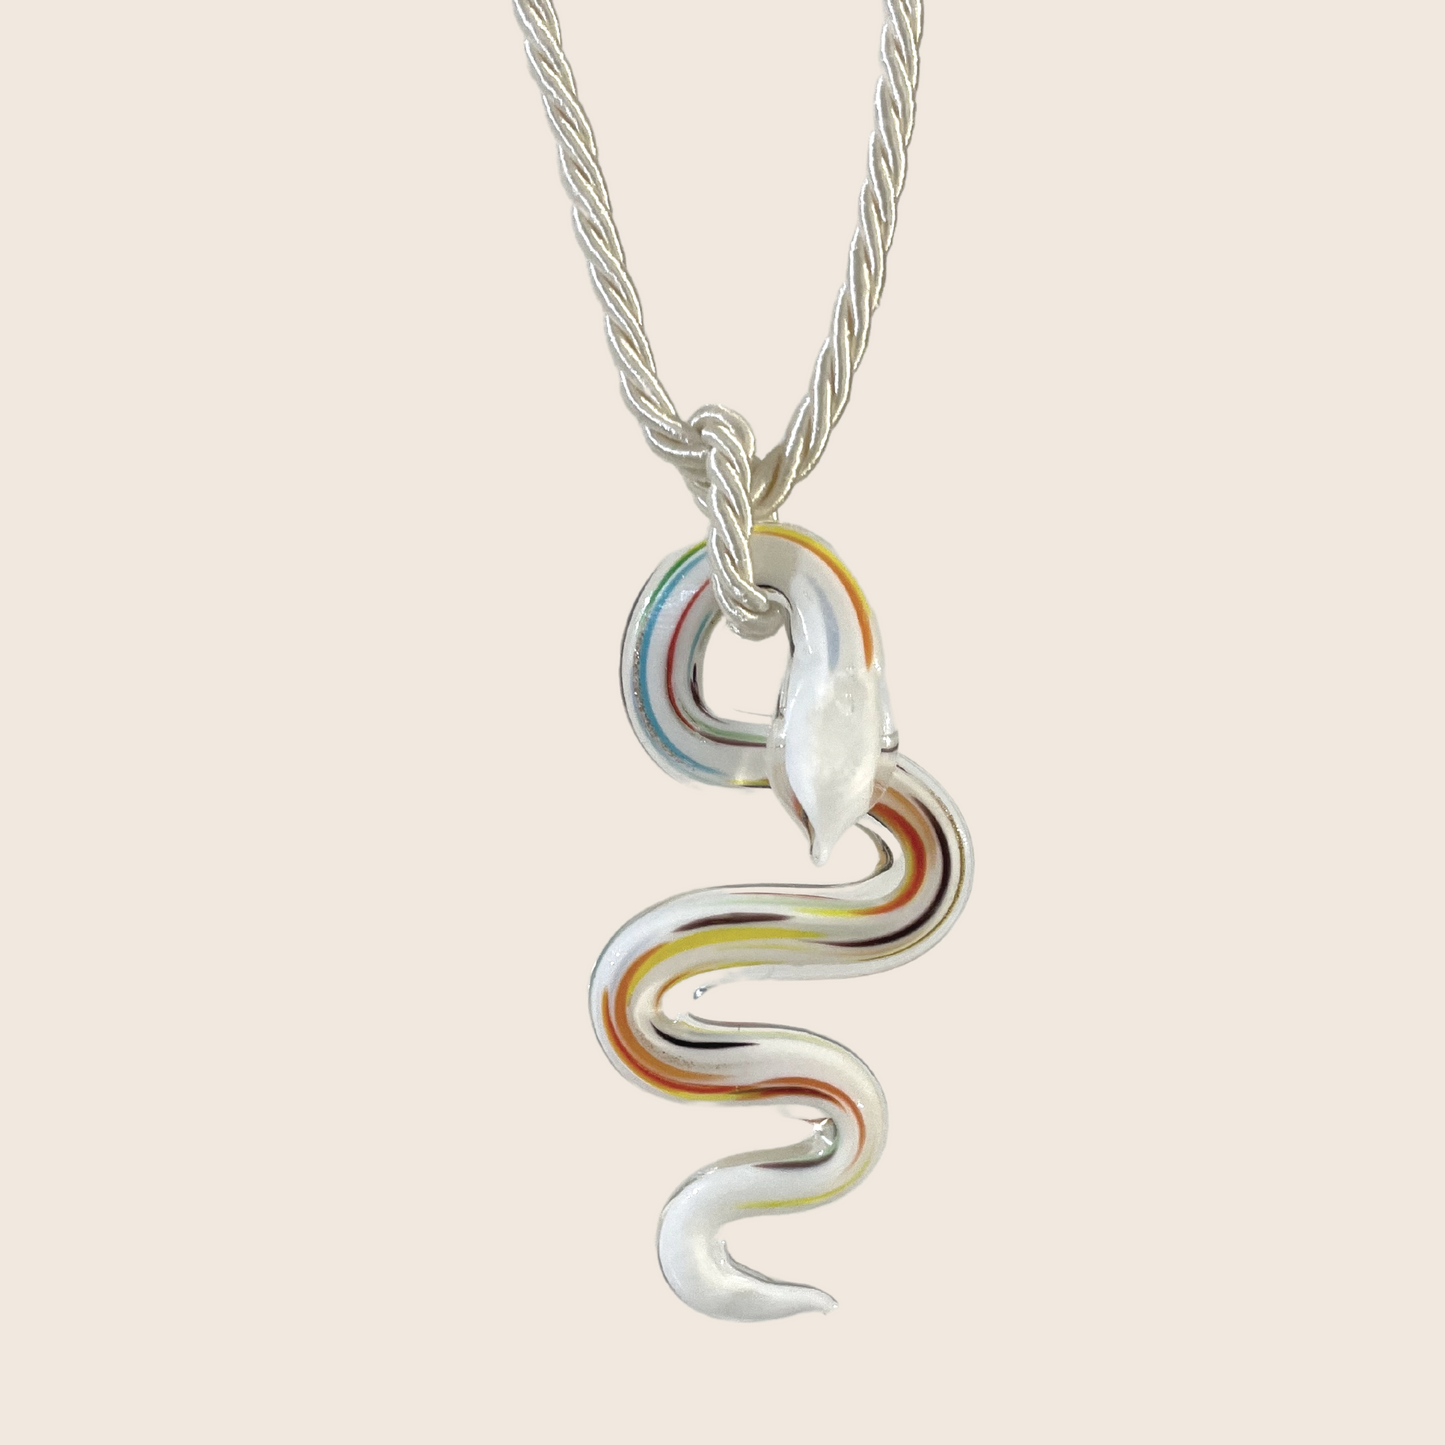 Glass Snake Necklace - Lemon Lua Glass Snake Necklace Lemon Lua Lemon Lua Glass Snake Necklace Glass Snake Necklace